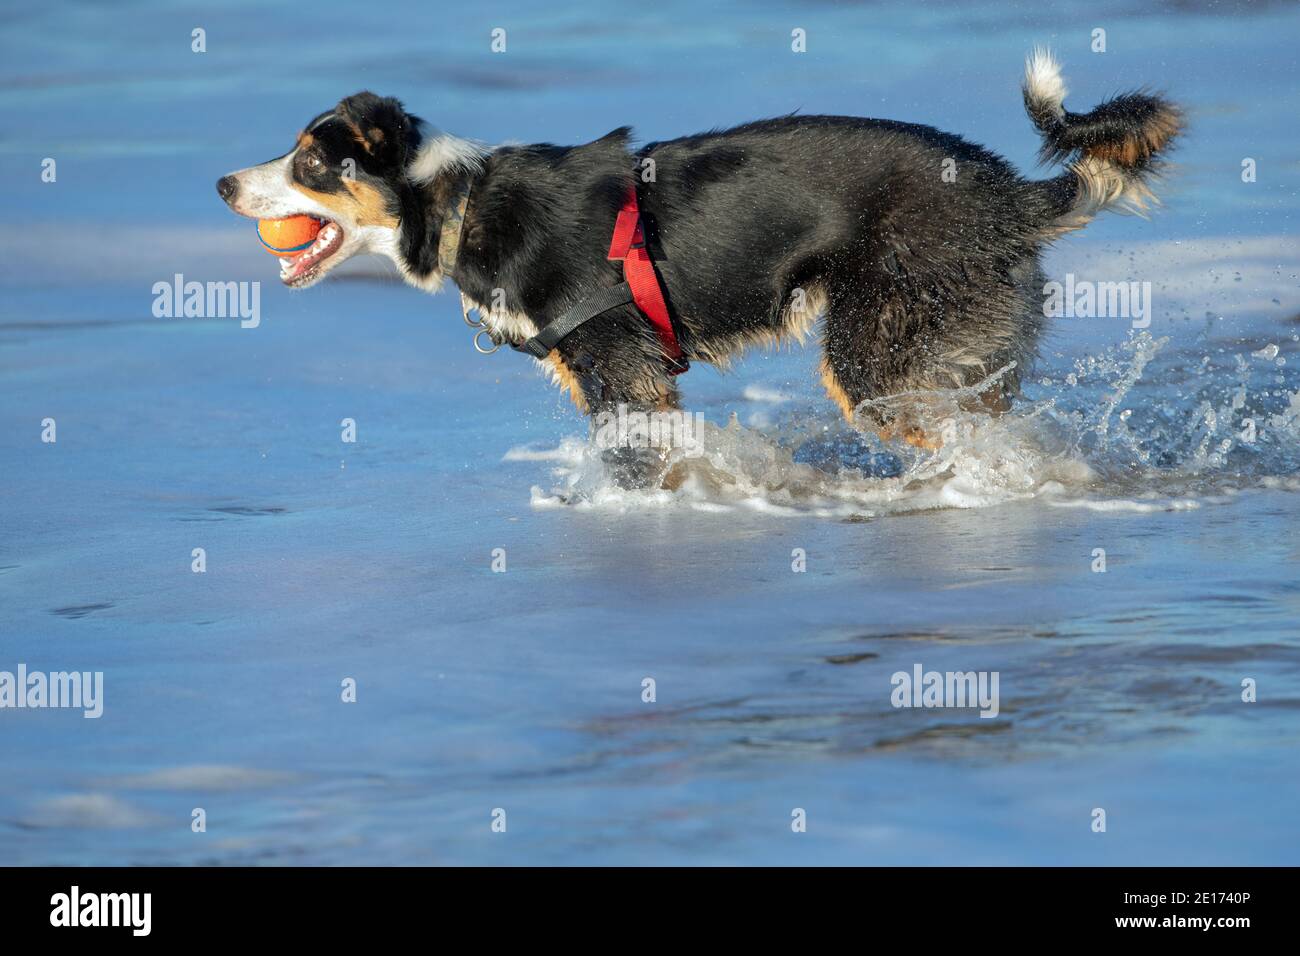 Tri-colored Border Collie Dog (Canis familiaris). Perfil, vista lateral, vadeo, chapoteo en agua de mar, recoger, llevar la pelota en la boca. Lado del mar. Foto de stock